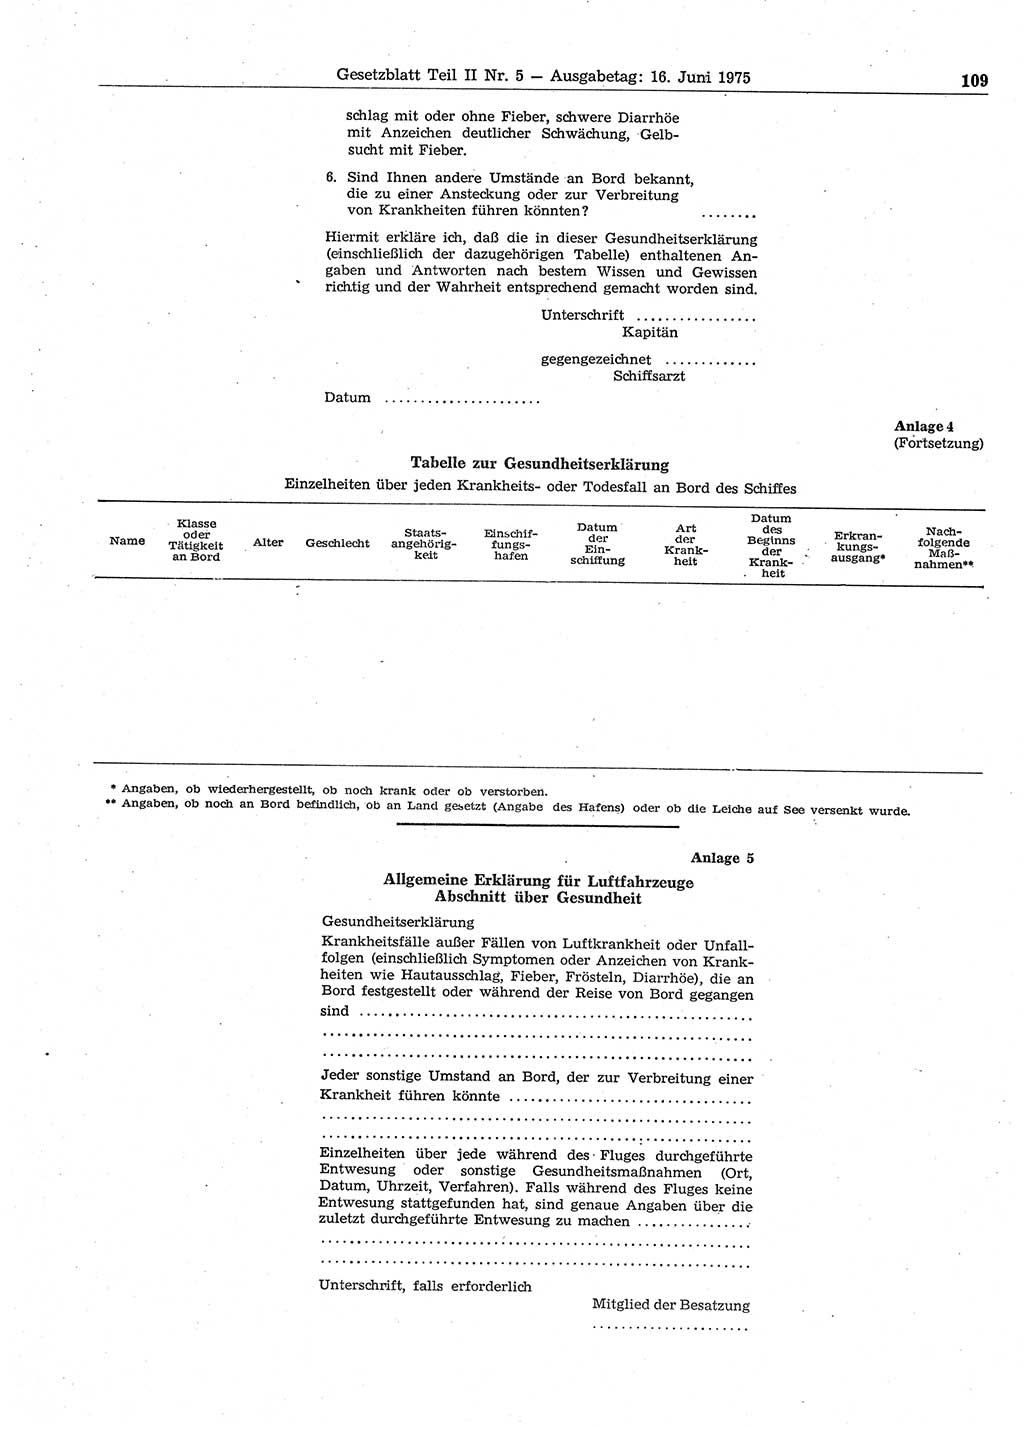 Gesetzblatt (GBl.) der Deutschen Demokratischen Republik (DDR) Teil ⅠⅠ 1975, Seite 109 (GBl. DDR ⅠⅠ 1975, S. 109)